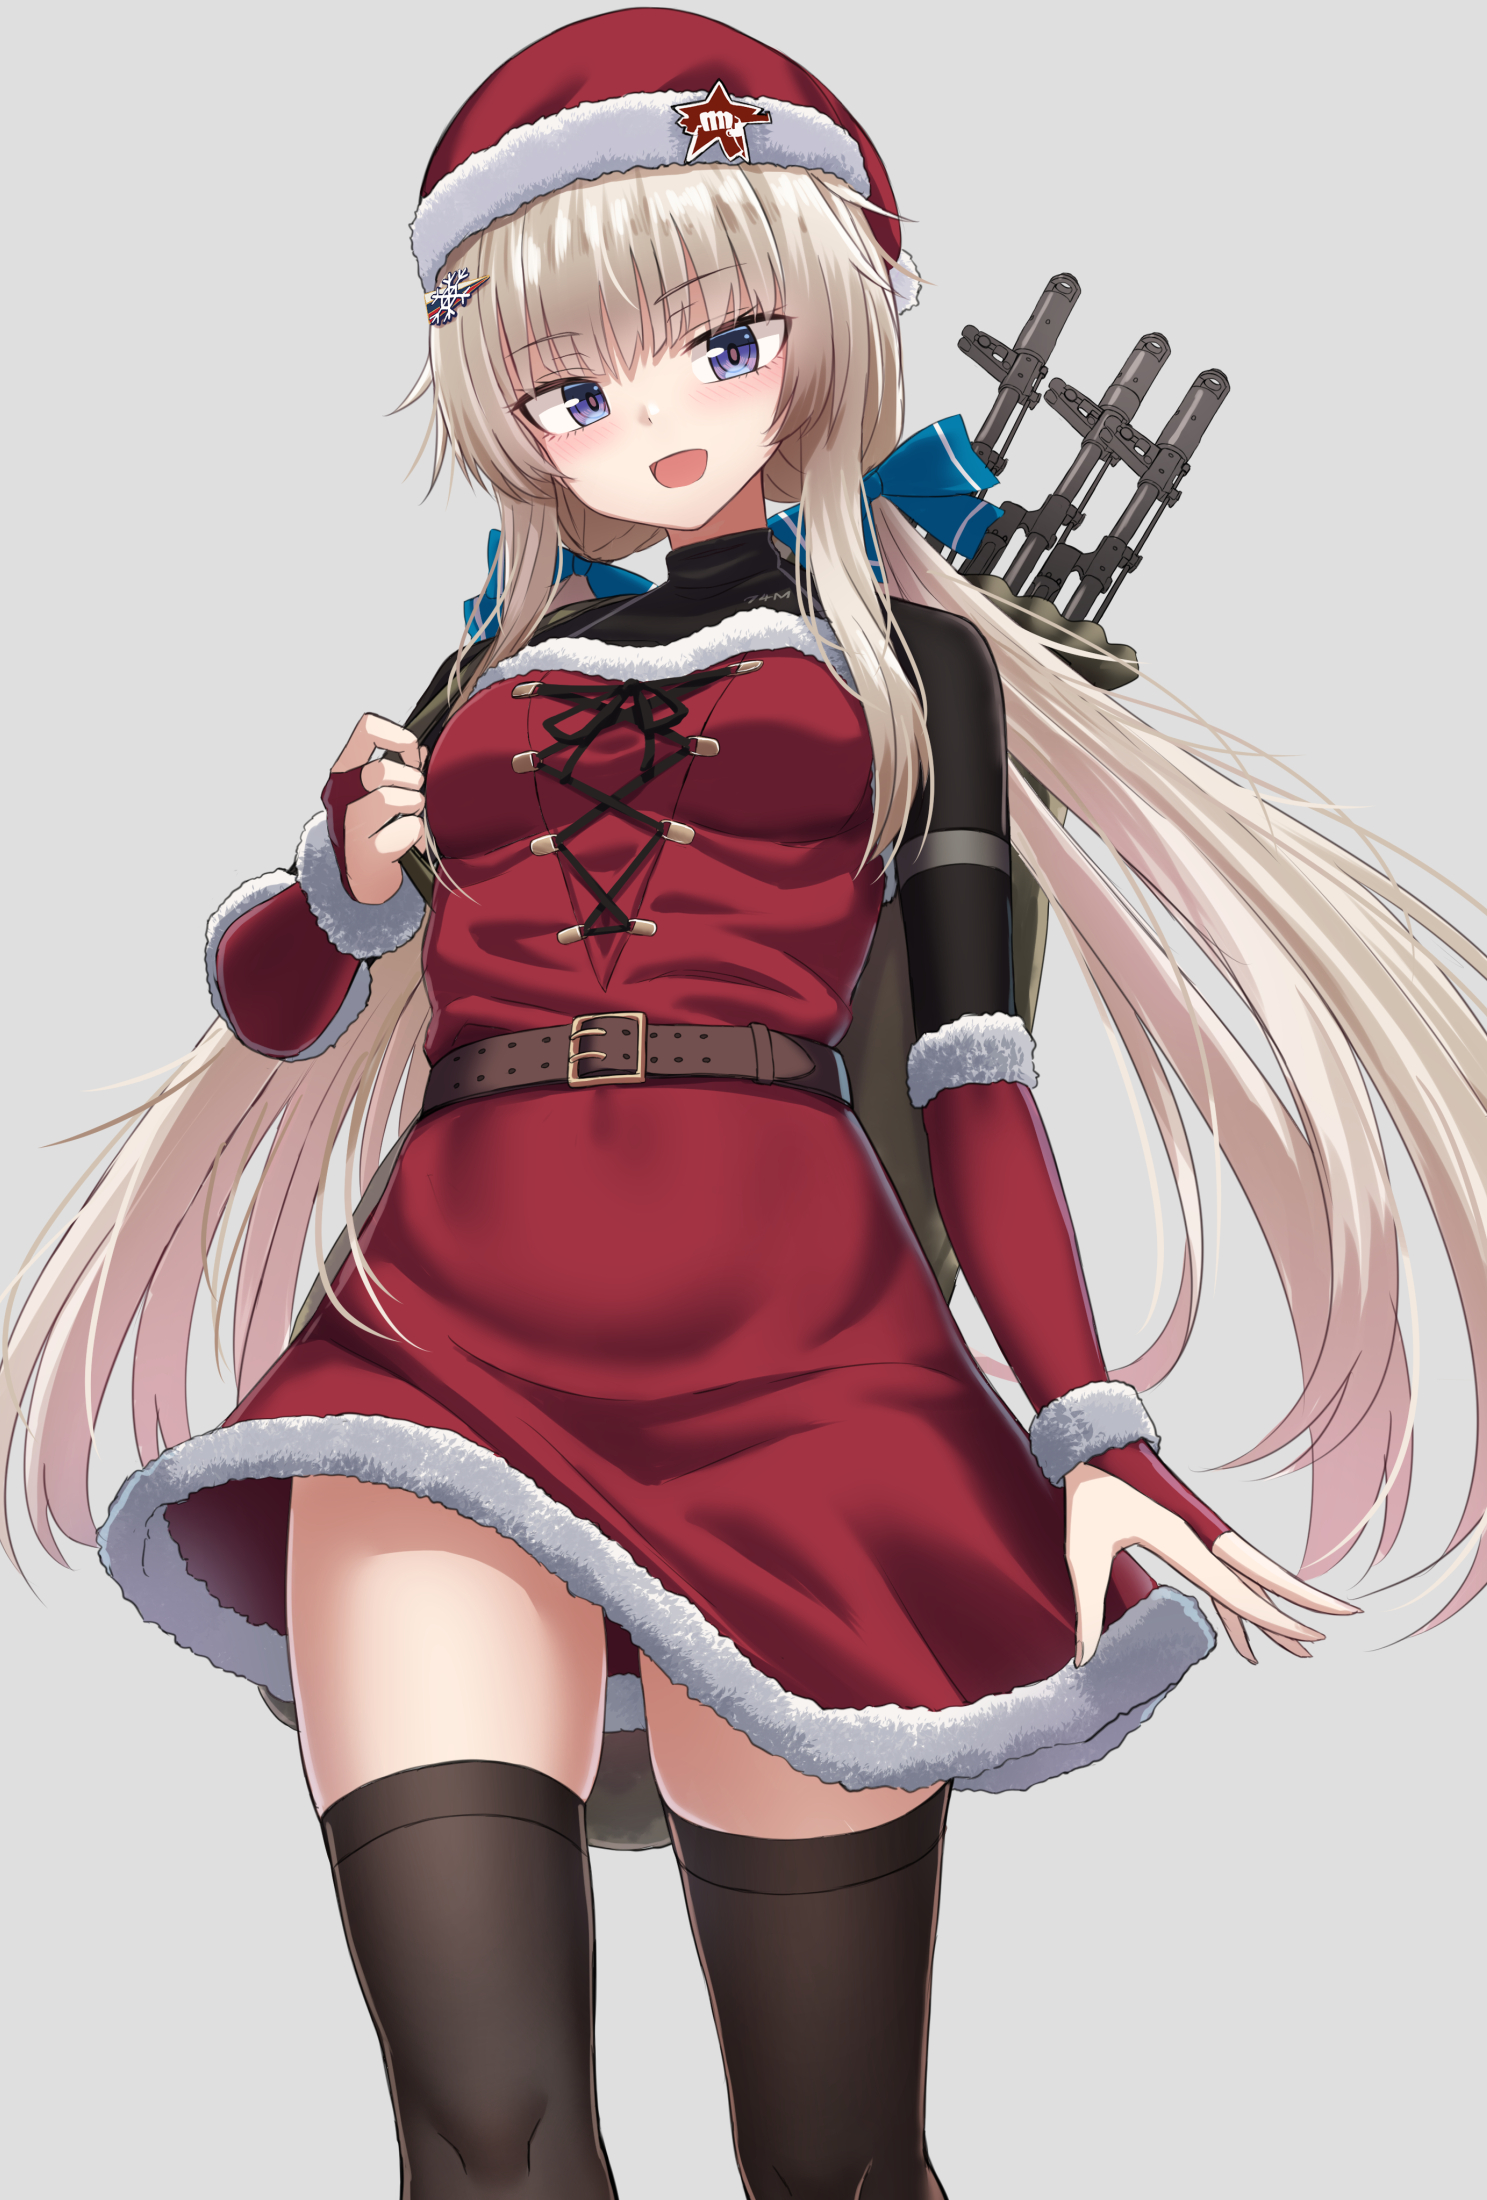 少女前线AK-74U图片